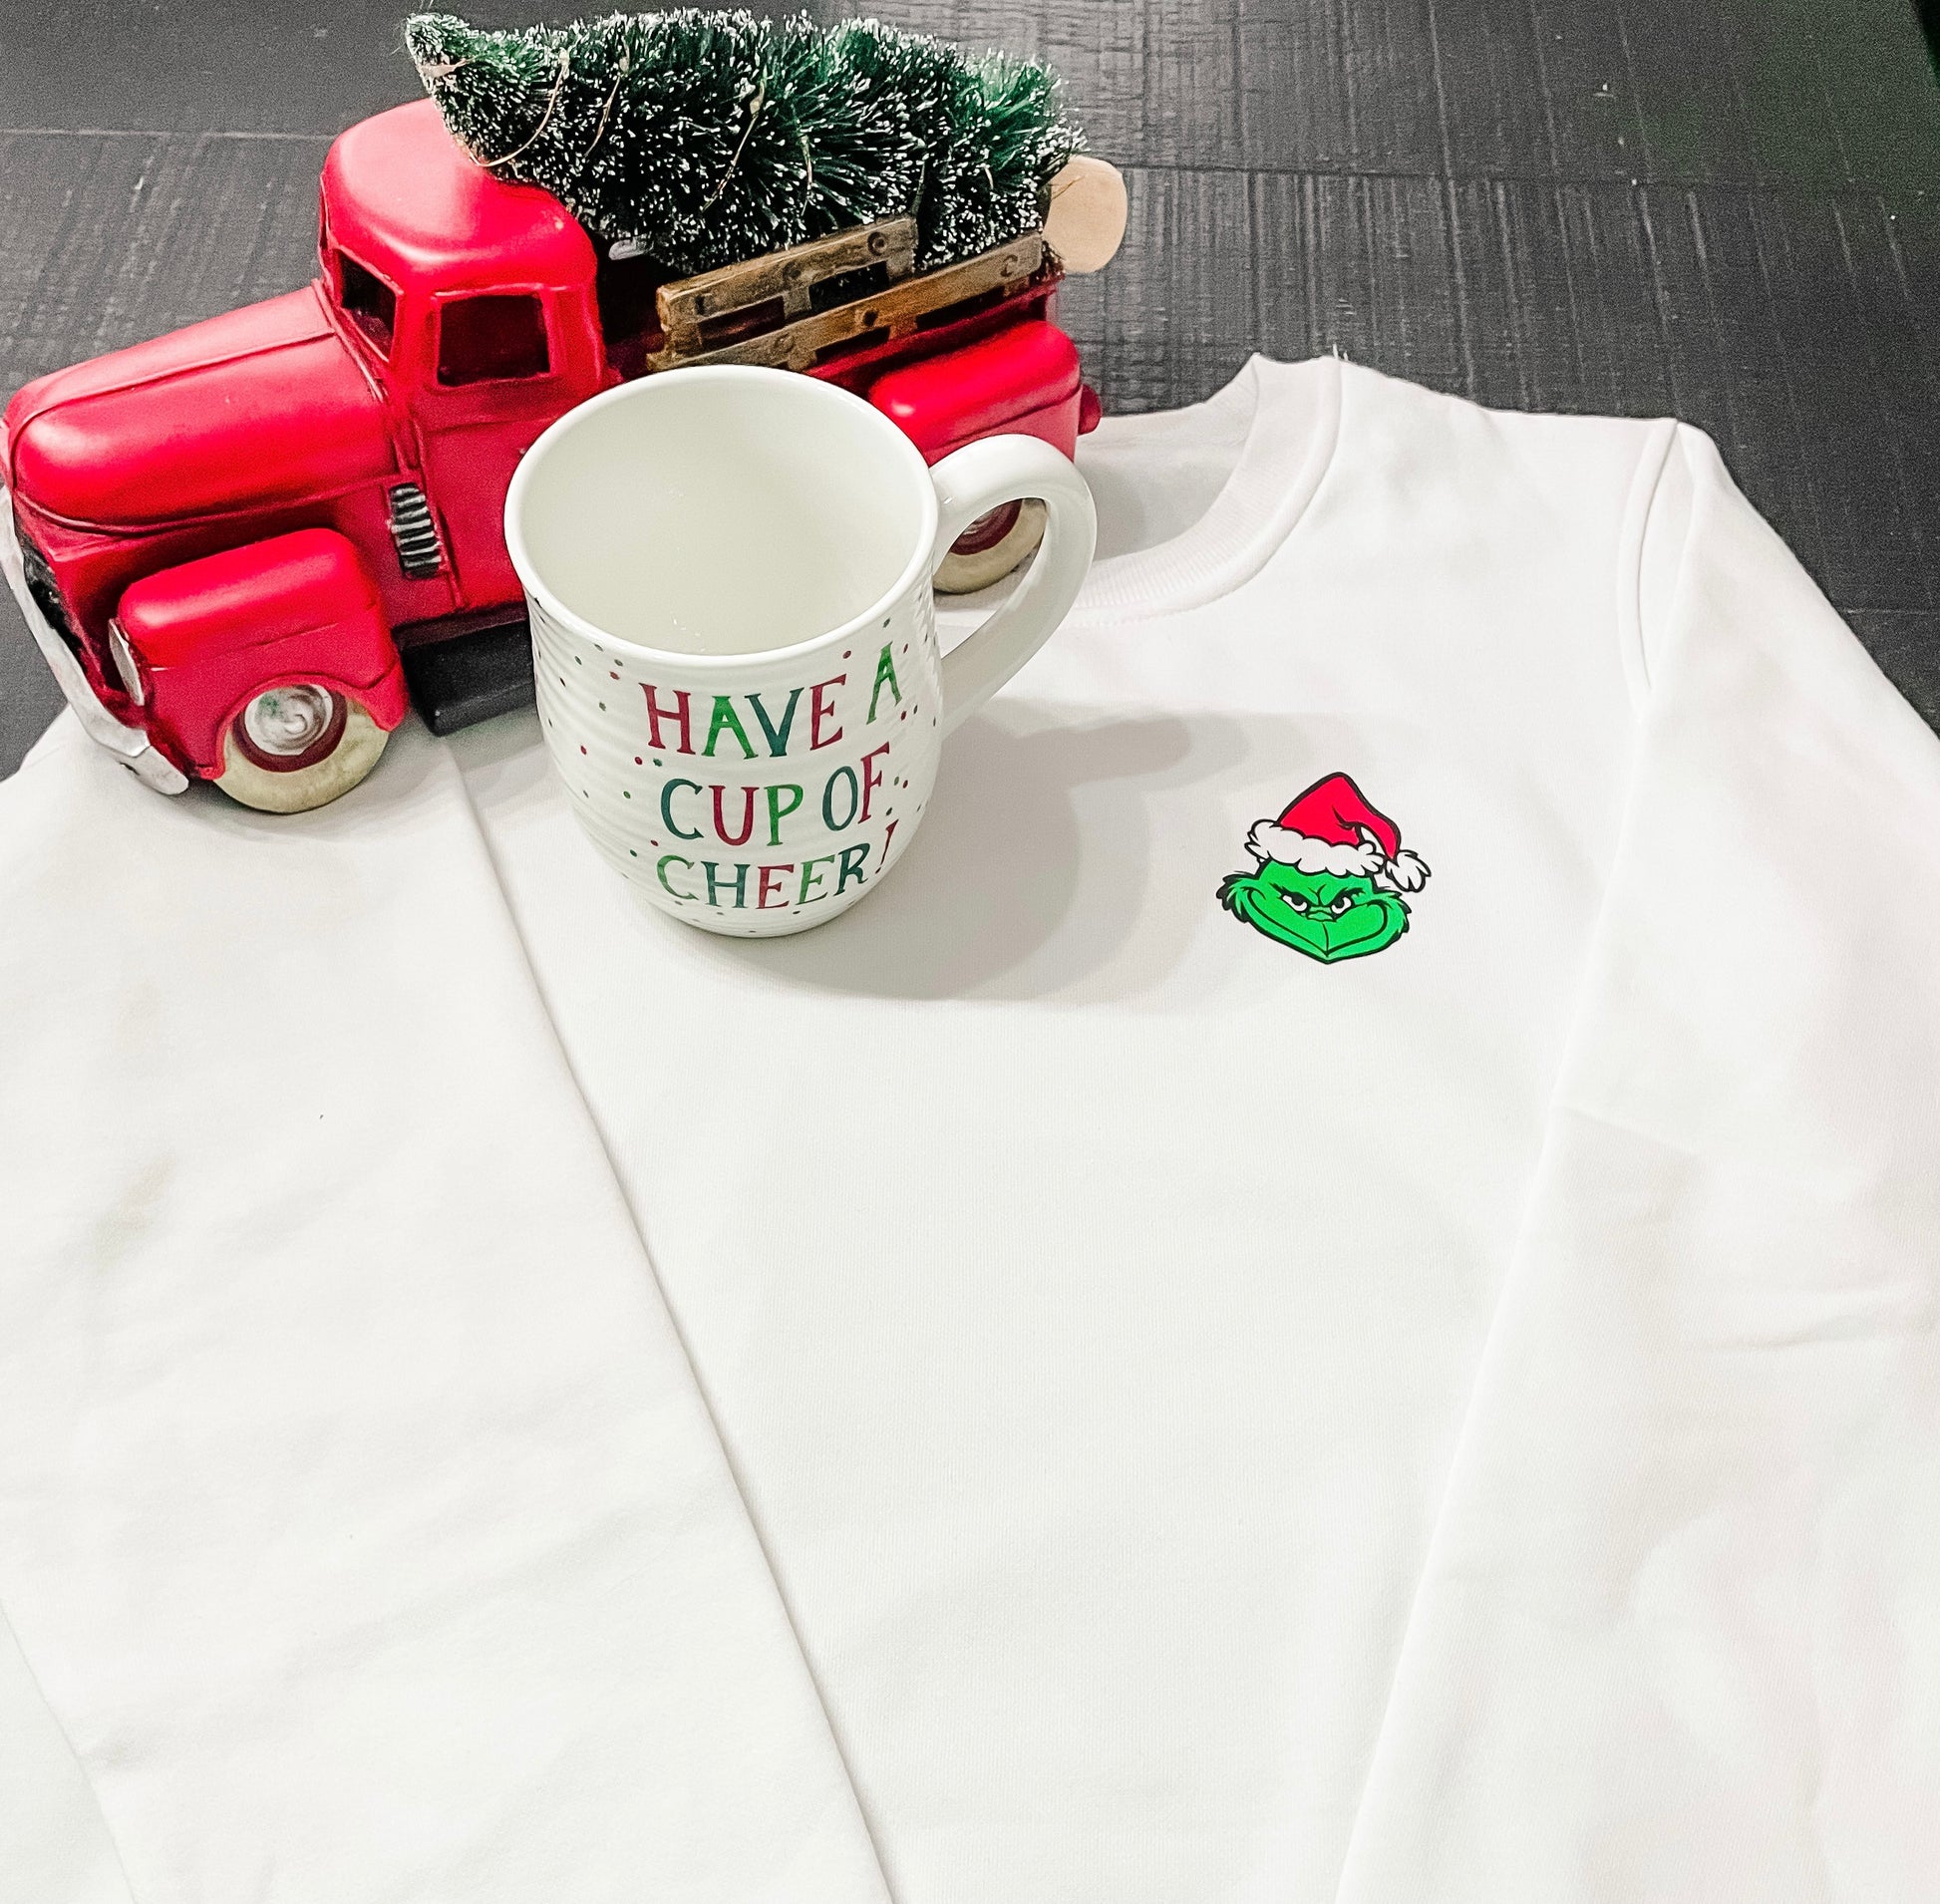 Merry Grinchmas Coffee Mug, Grinch Mug, Christmas Mug, Christmas Decor,  Grinch Christmas Mug, Merry Christmas Coffee Mug, Christmas Gift -   Hong Kong